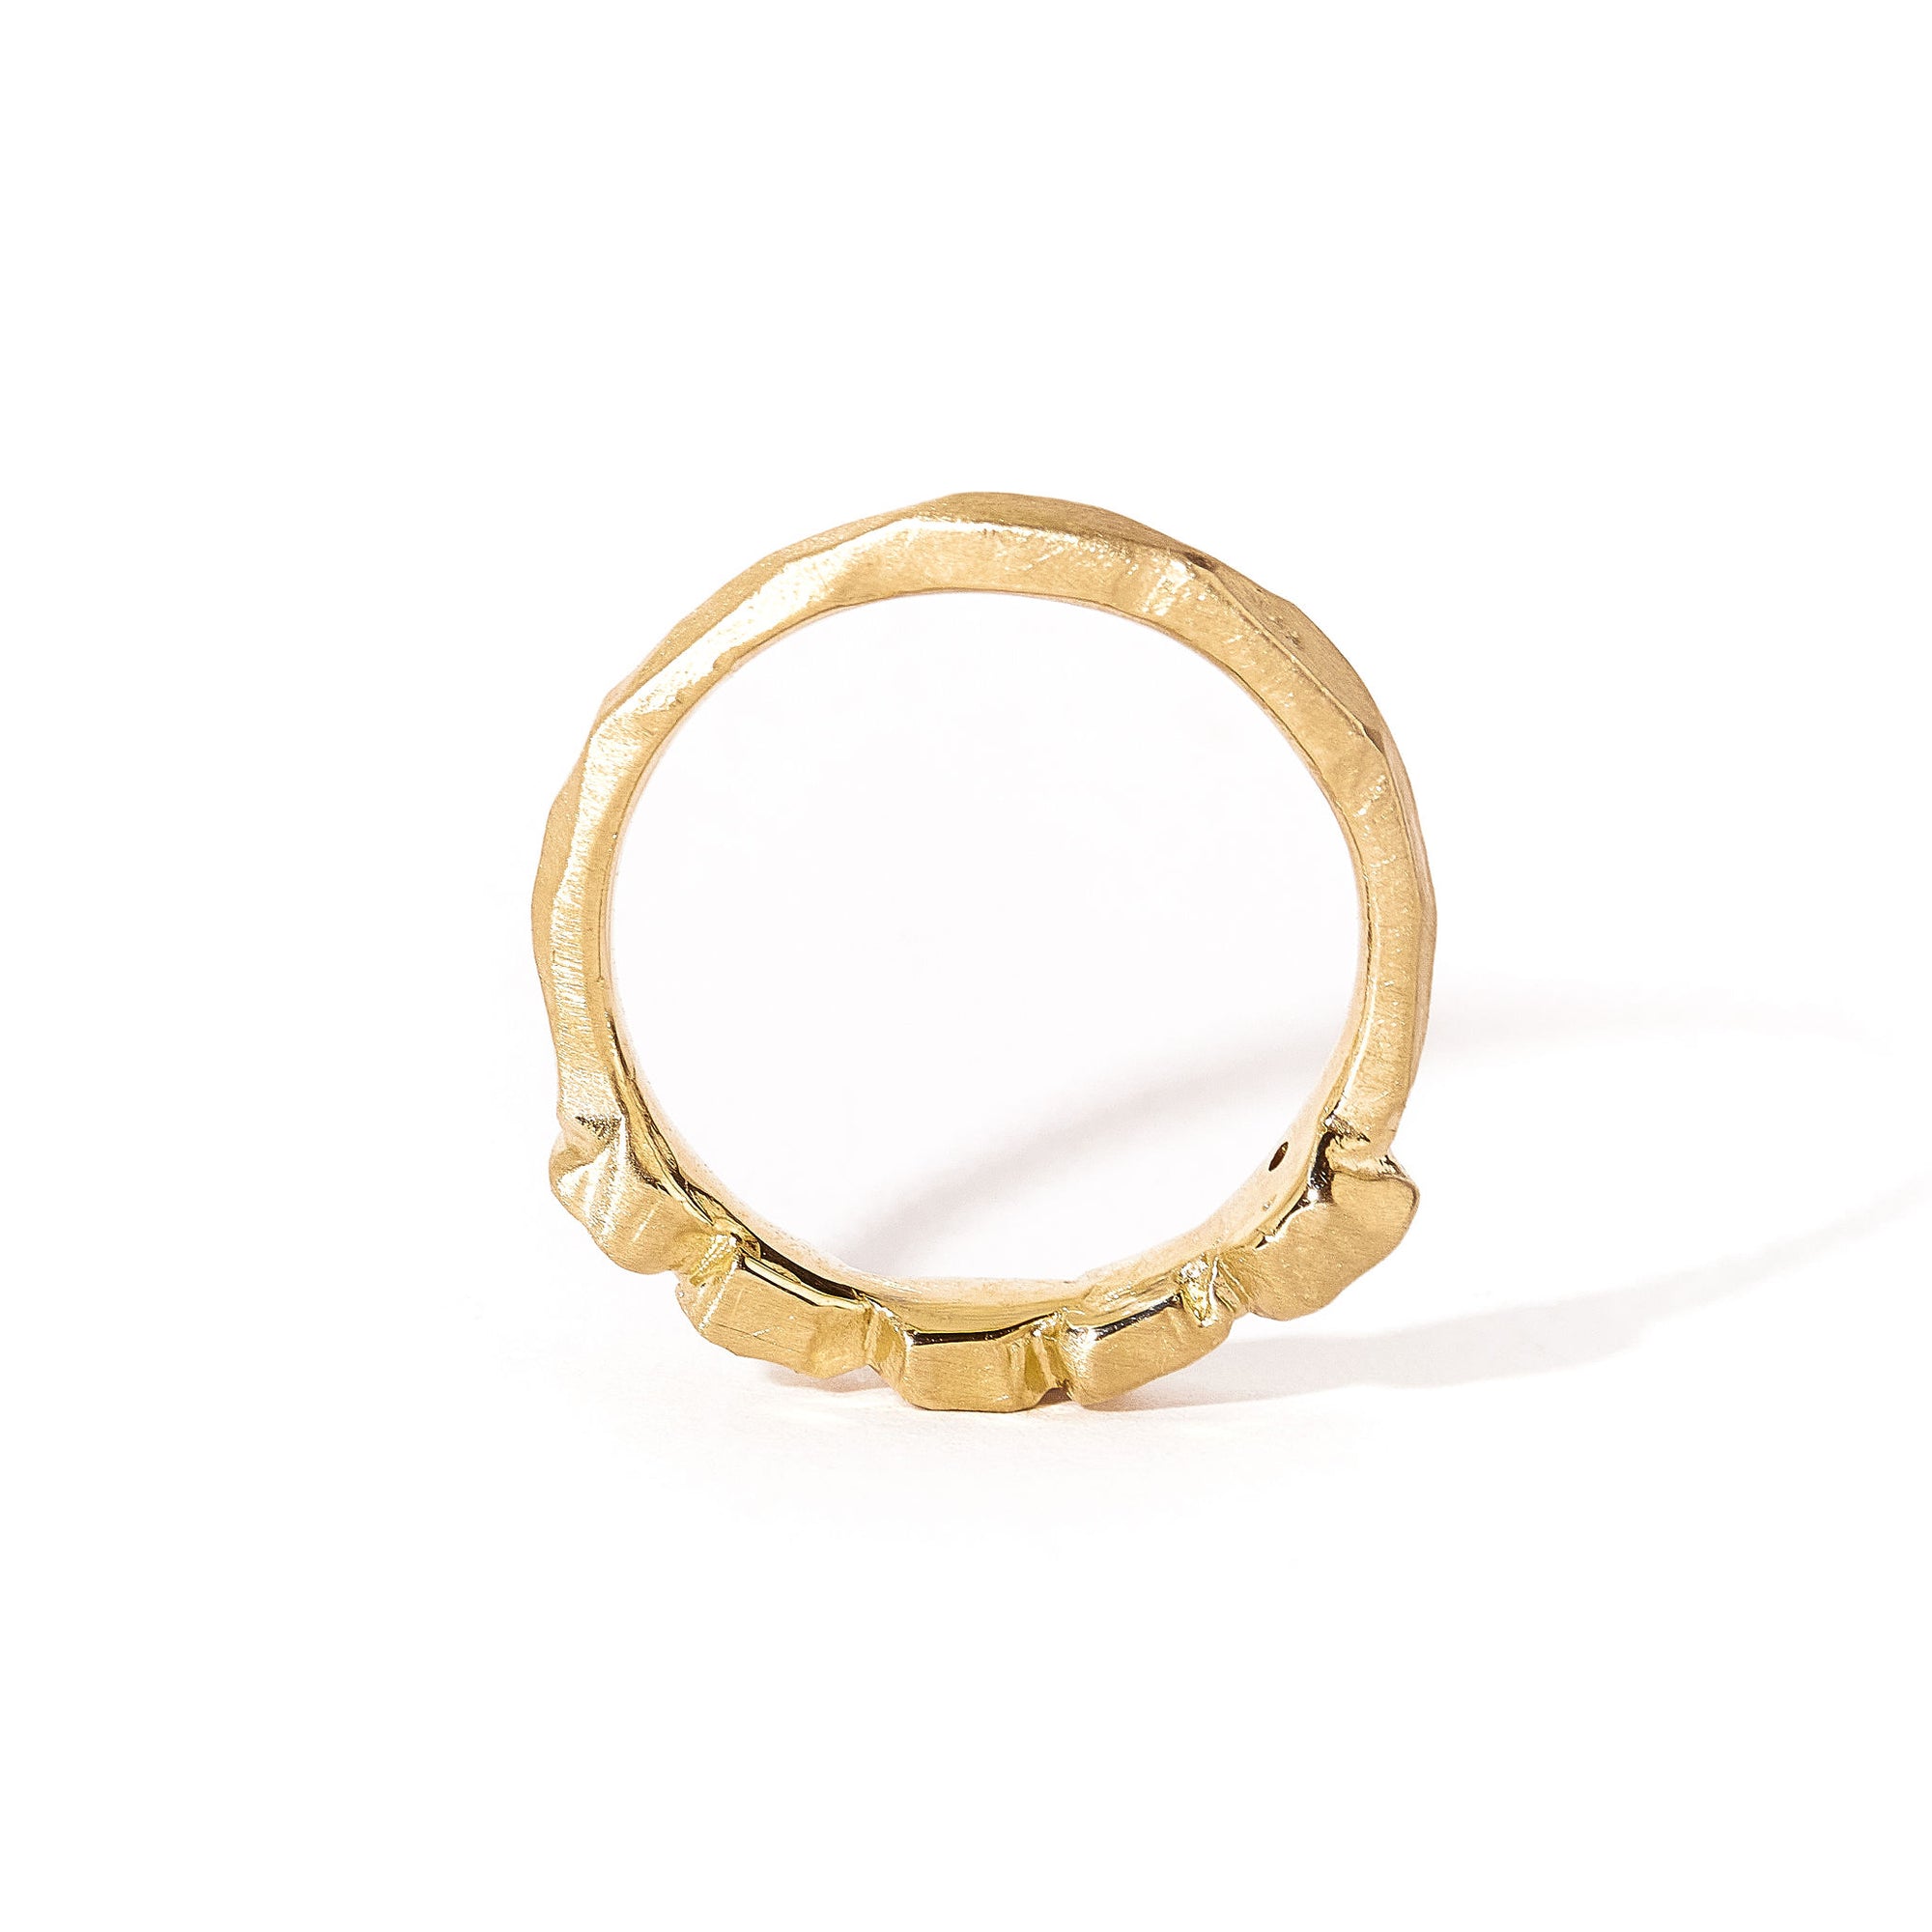  5 Stone Diamond Handmade Ring in 9ct Yellow Gold